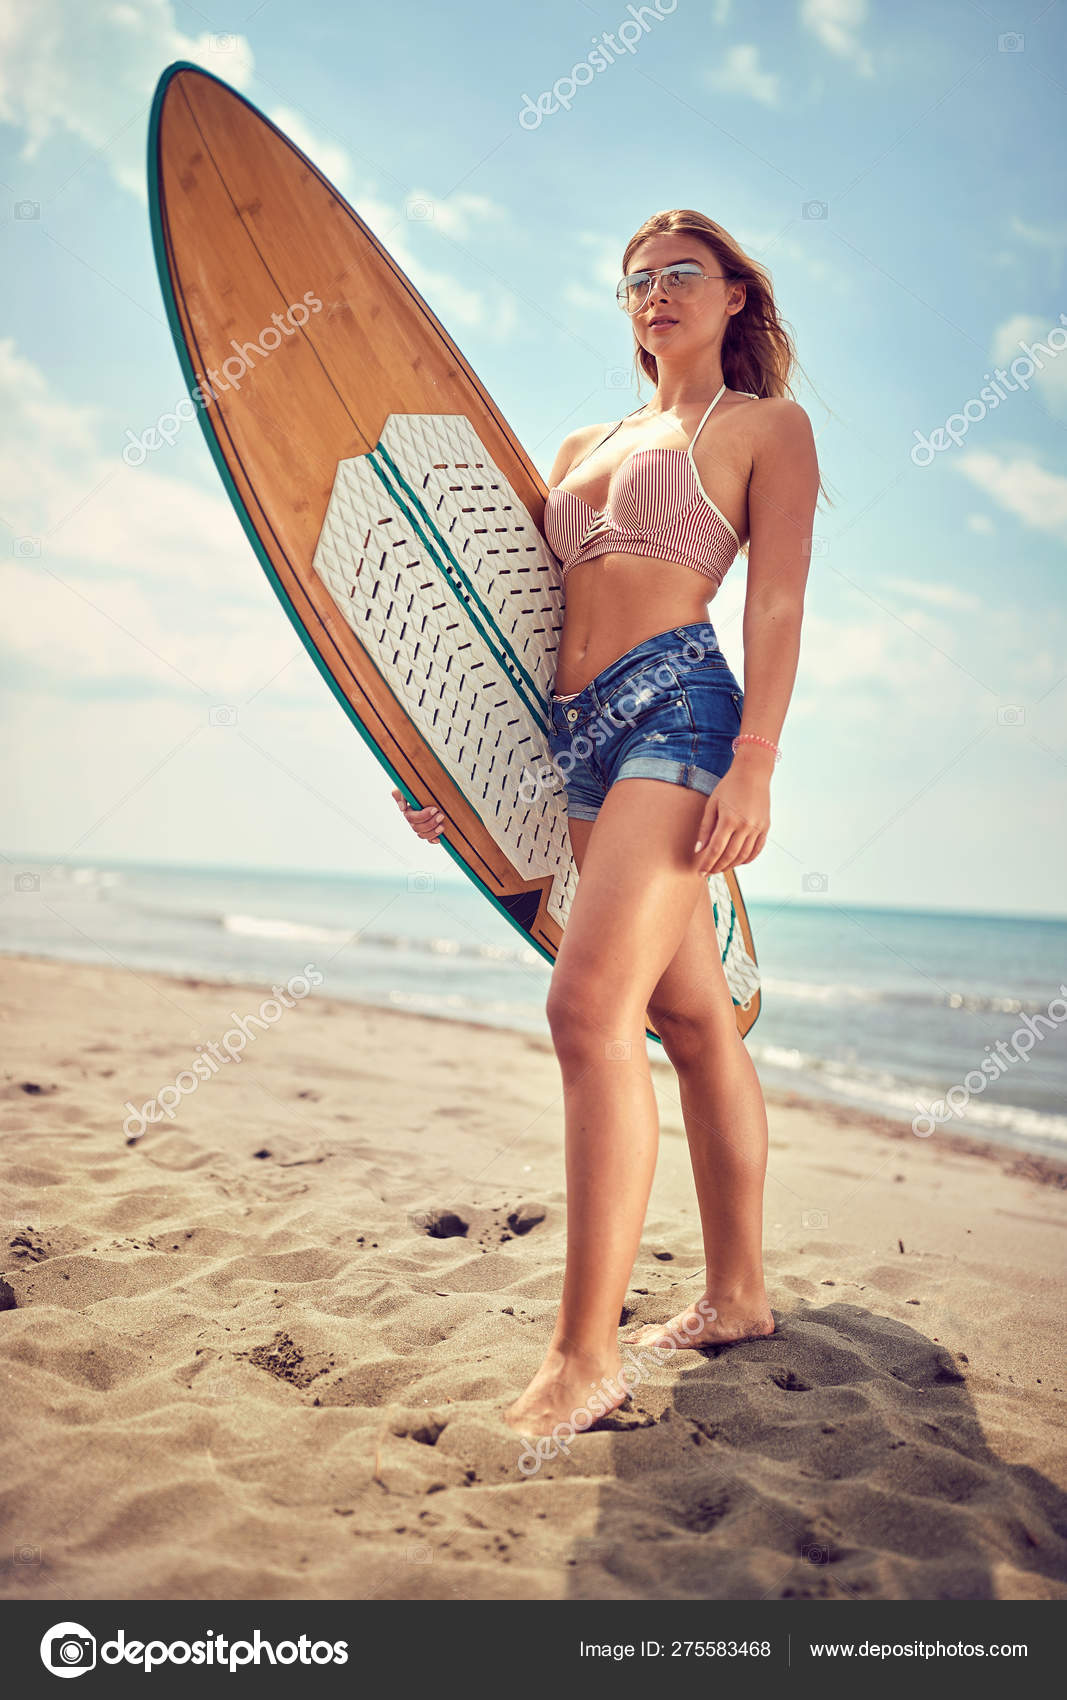 Spoedig Duizeligheid Edele Surfen meisje-moderne actieve sport lifestyle en zomer vakantie ⬇  Stockfoto, rechtenvrije foto door © luckybusiness #275583468